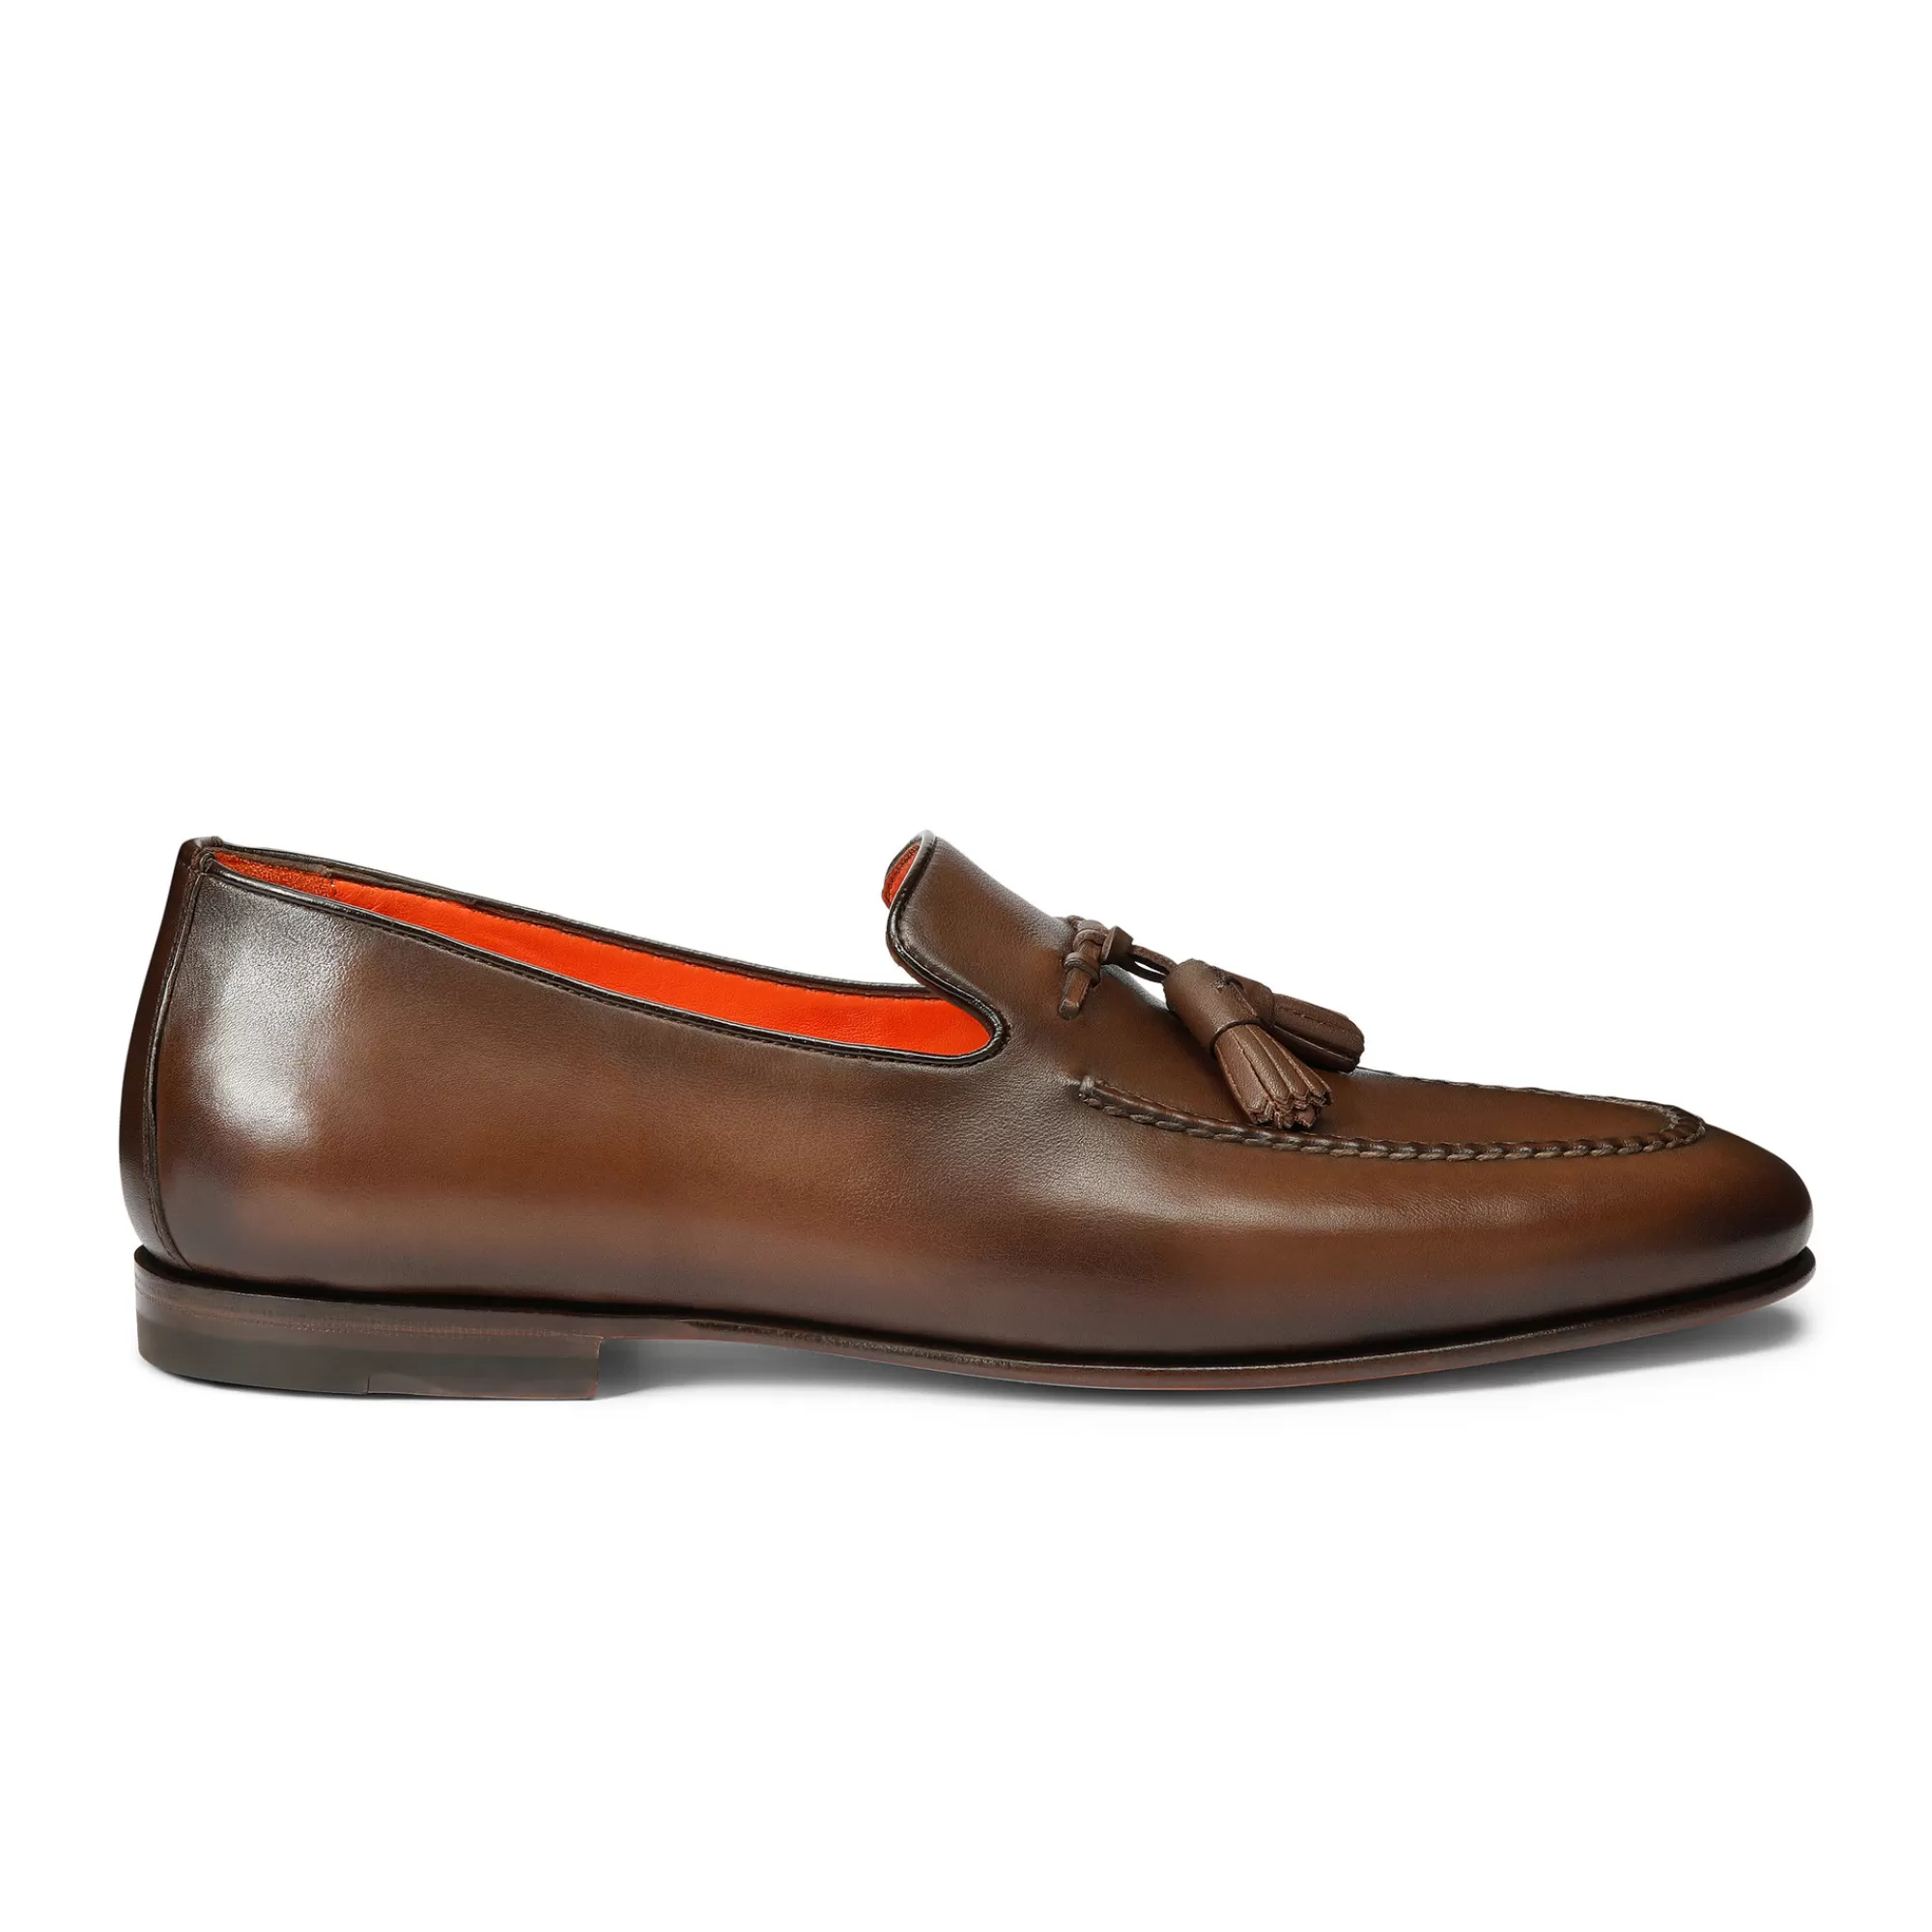 Shop Mocassino con nappe da uomo in pelle anticata marrone | SUGGERIMENTI Vedi tutte le calzature | Mocassini